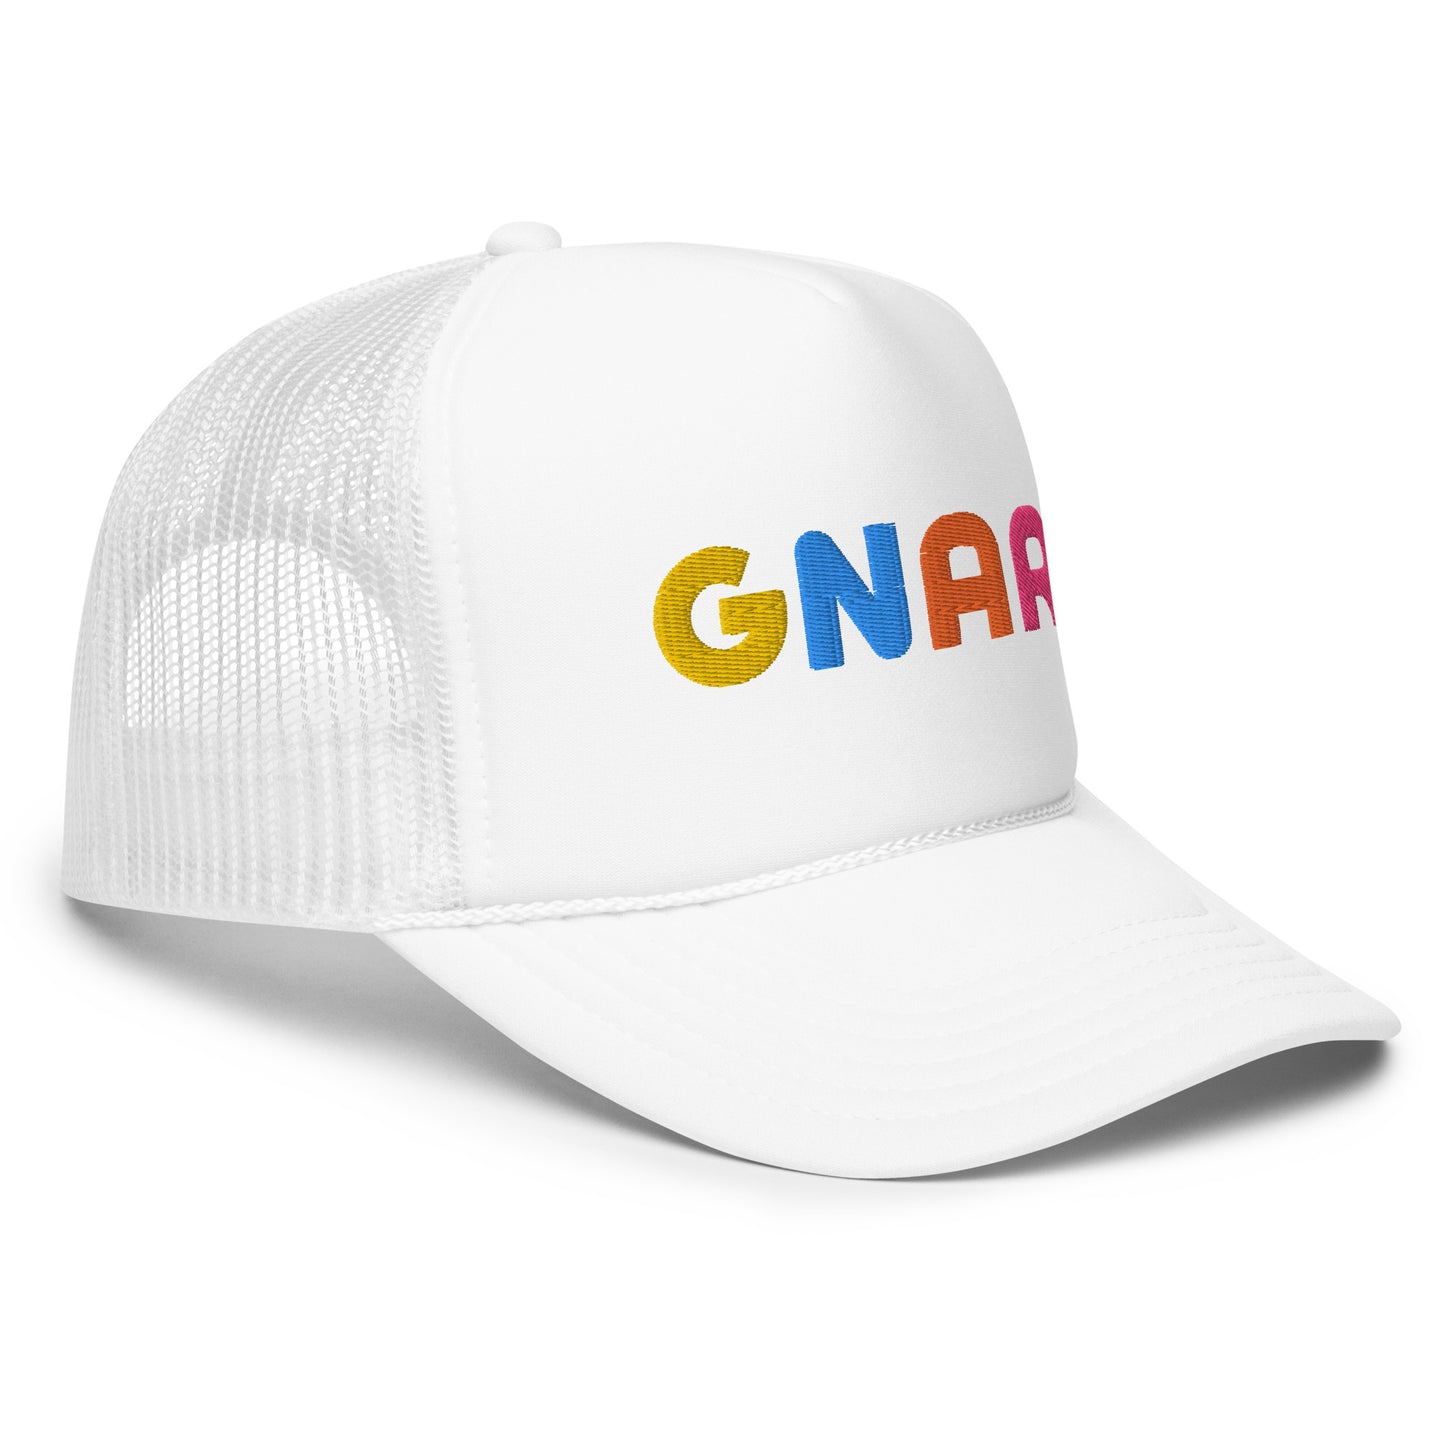 GNAR retro multi color trucker hat